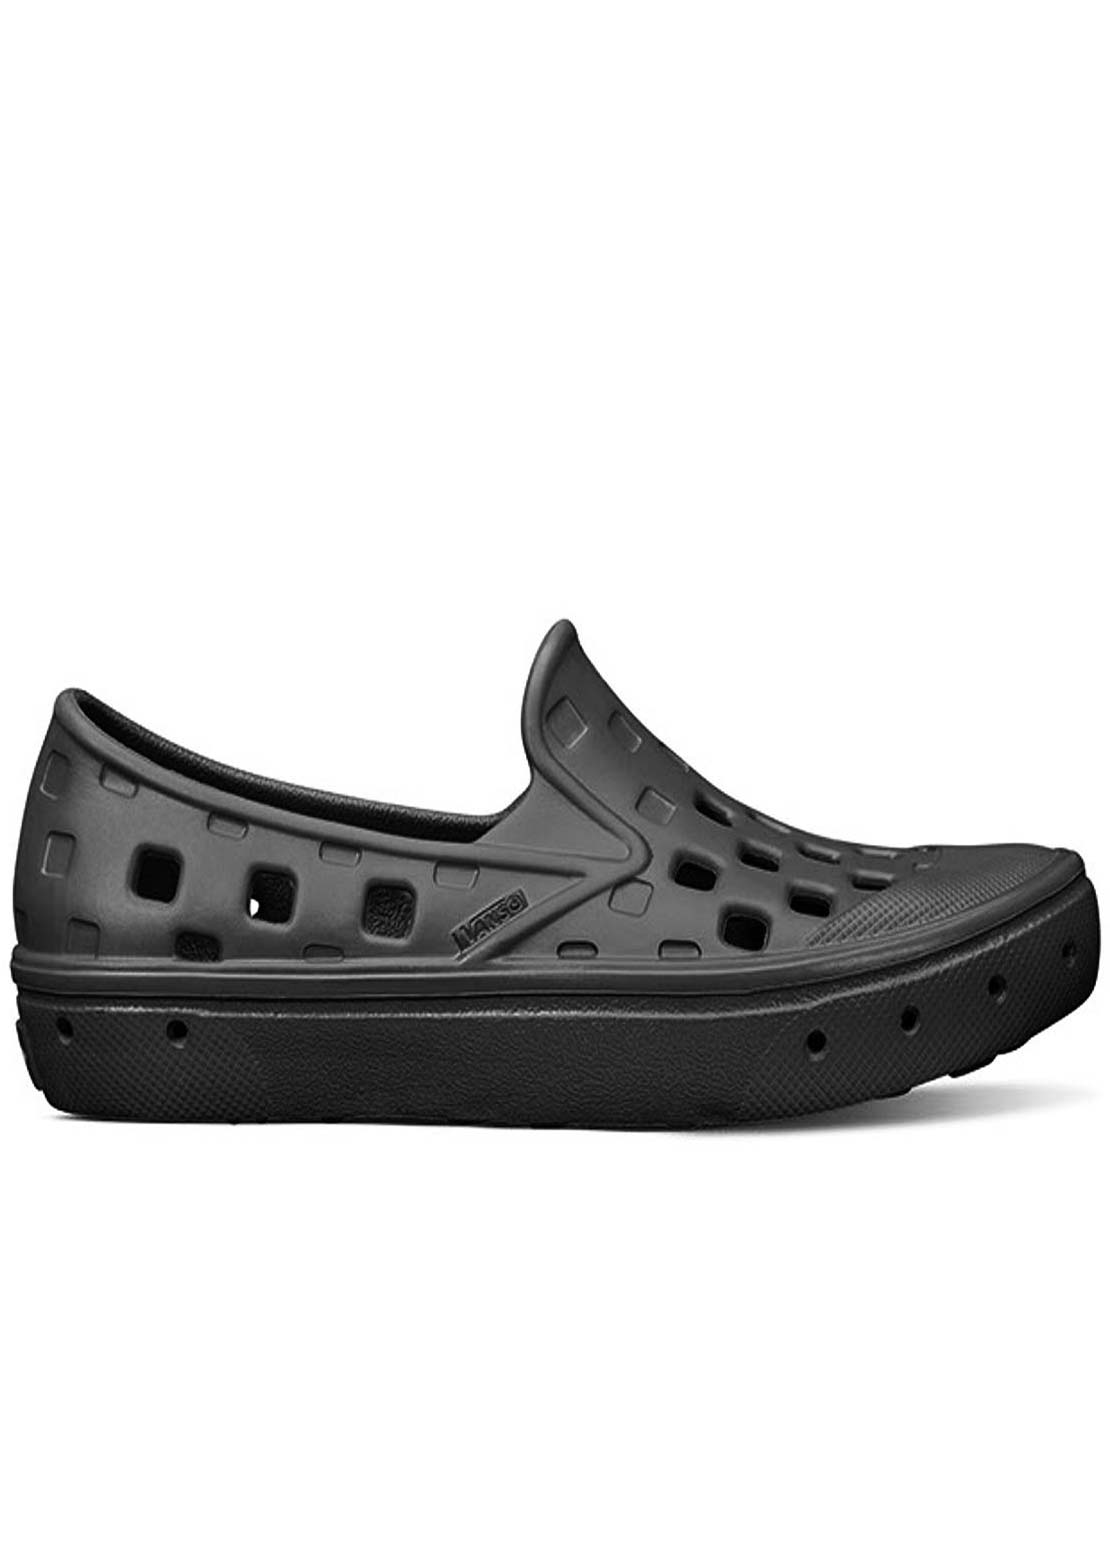 Vans Toddler Slip-On Trek Shoes Black